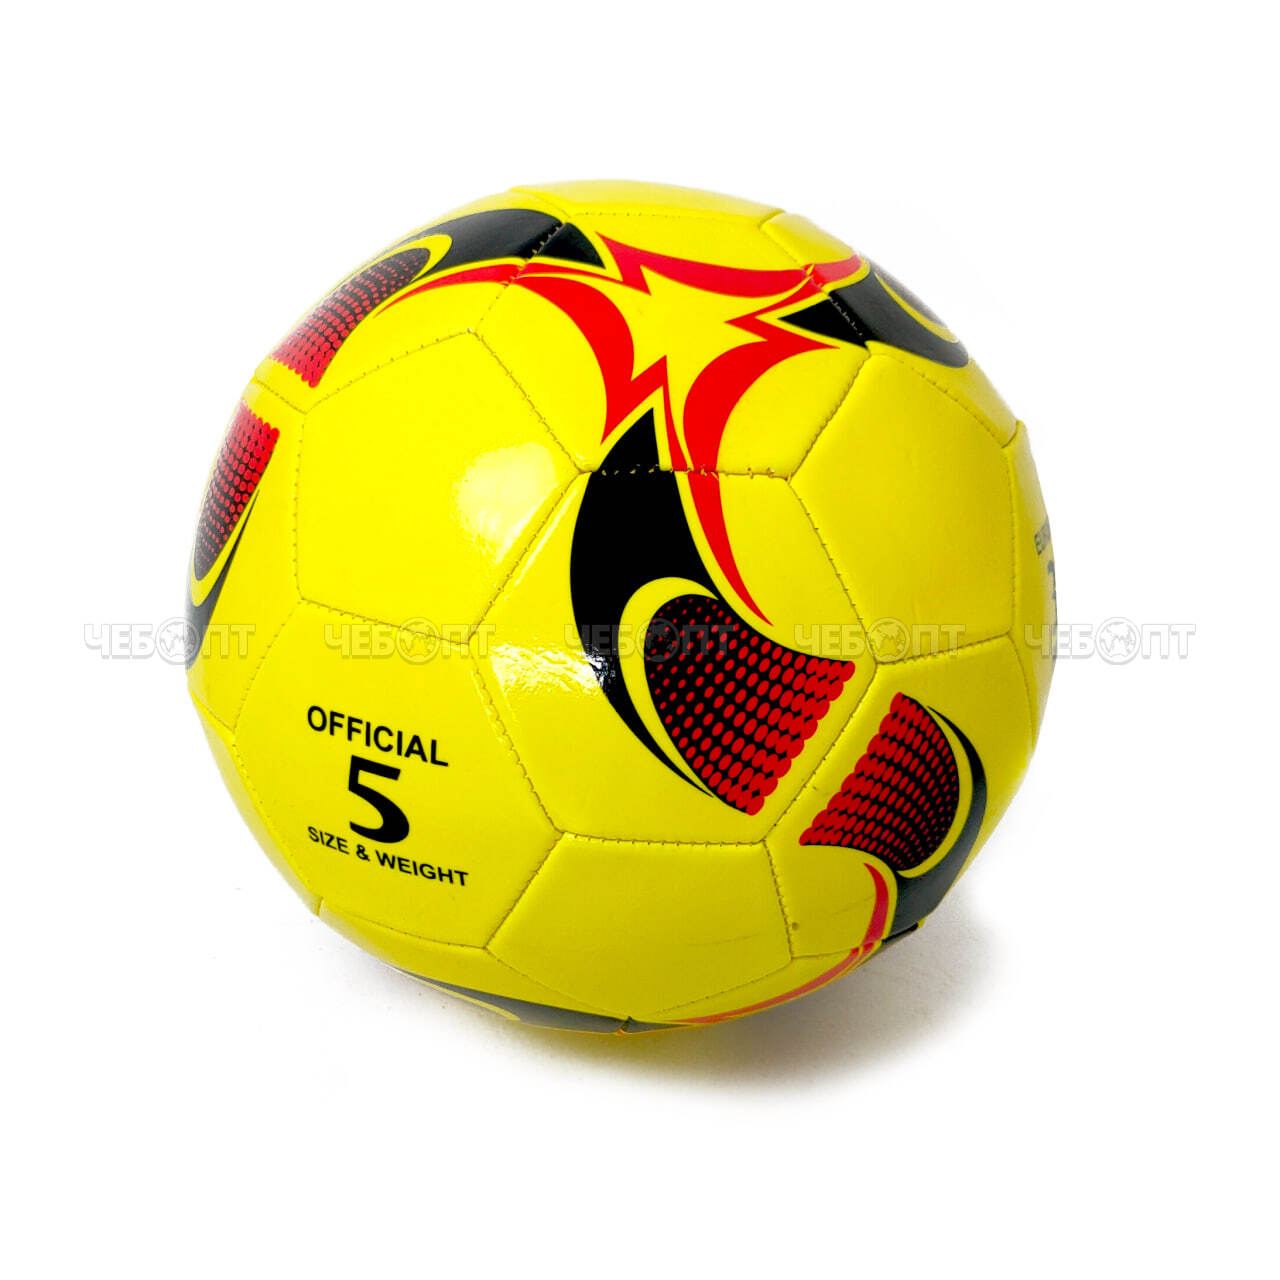 Мяч футбольный размер 5" в ассортименте арт. 060009 $ [100] ТМ Покатушки. ЧЕБОПТ.